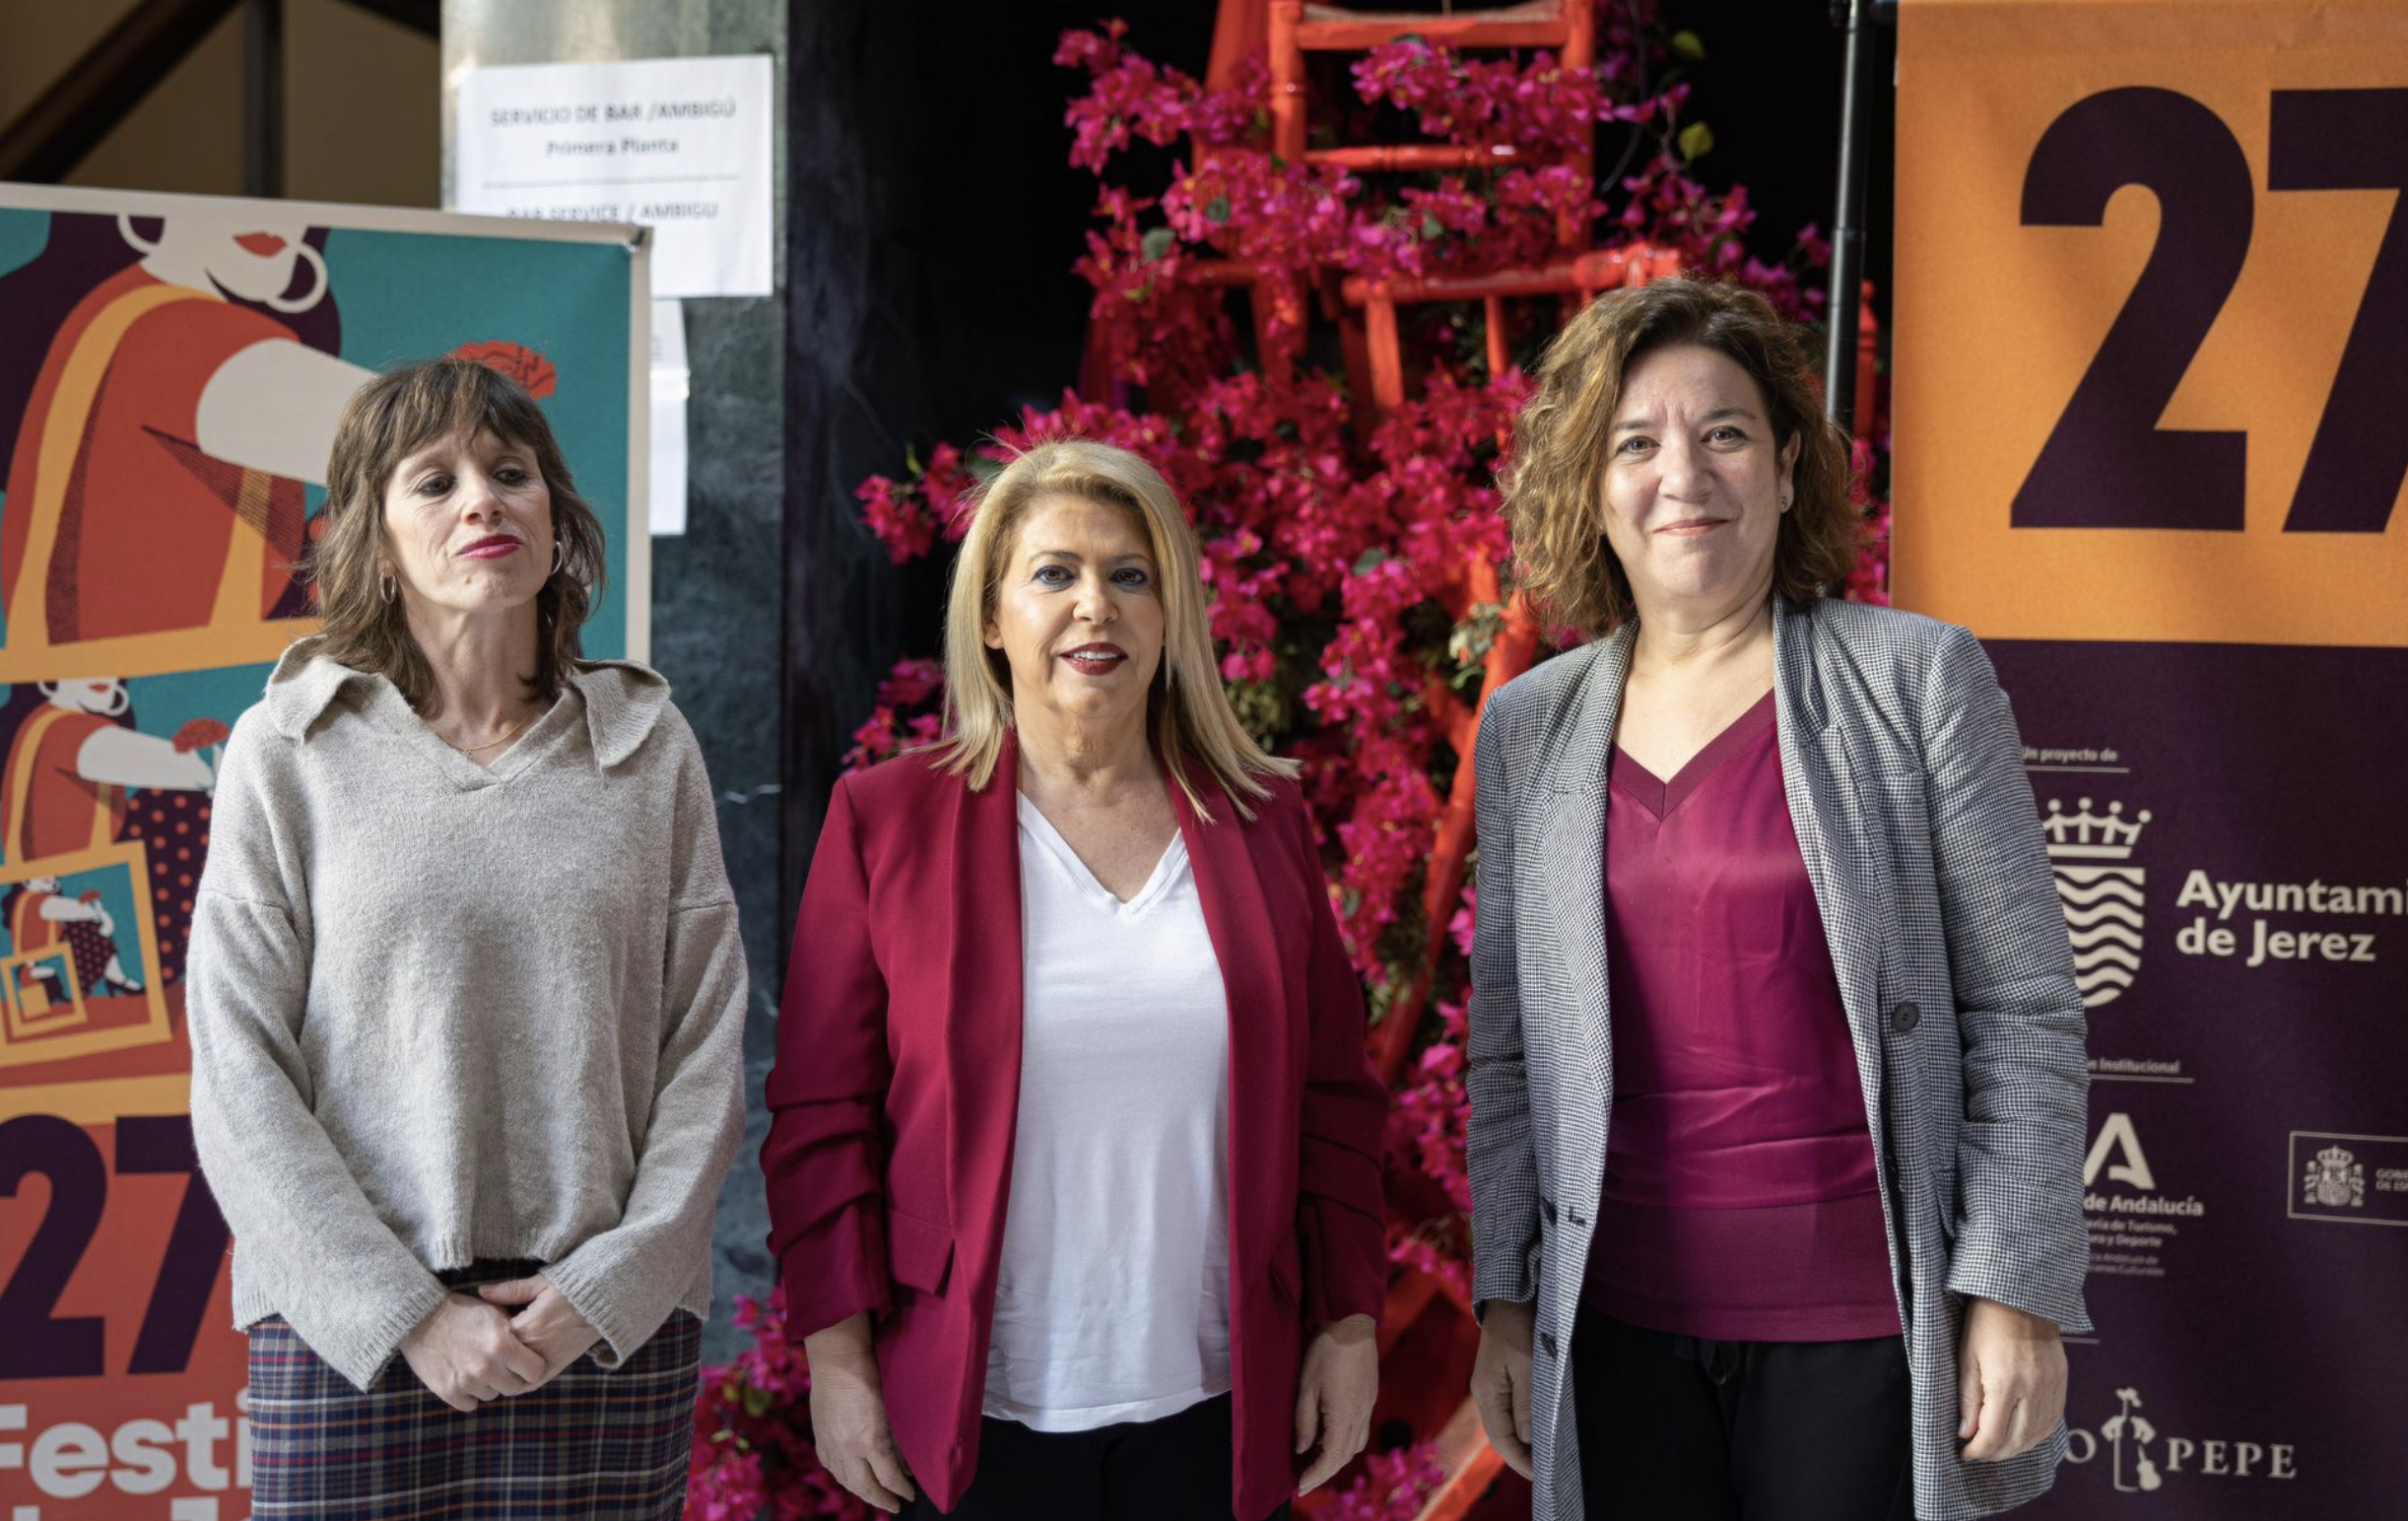 La exalcaldesa Mamen Sánchez, entre Laura Álvarez (izda. en la foto), e Isamay Benavente, hasta ahora directora de Villamarta y del Festival de Jerez.